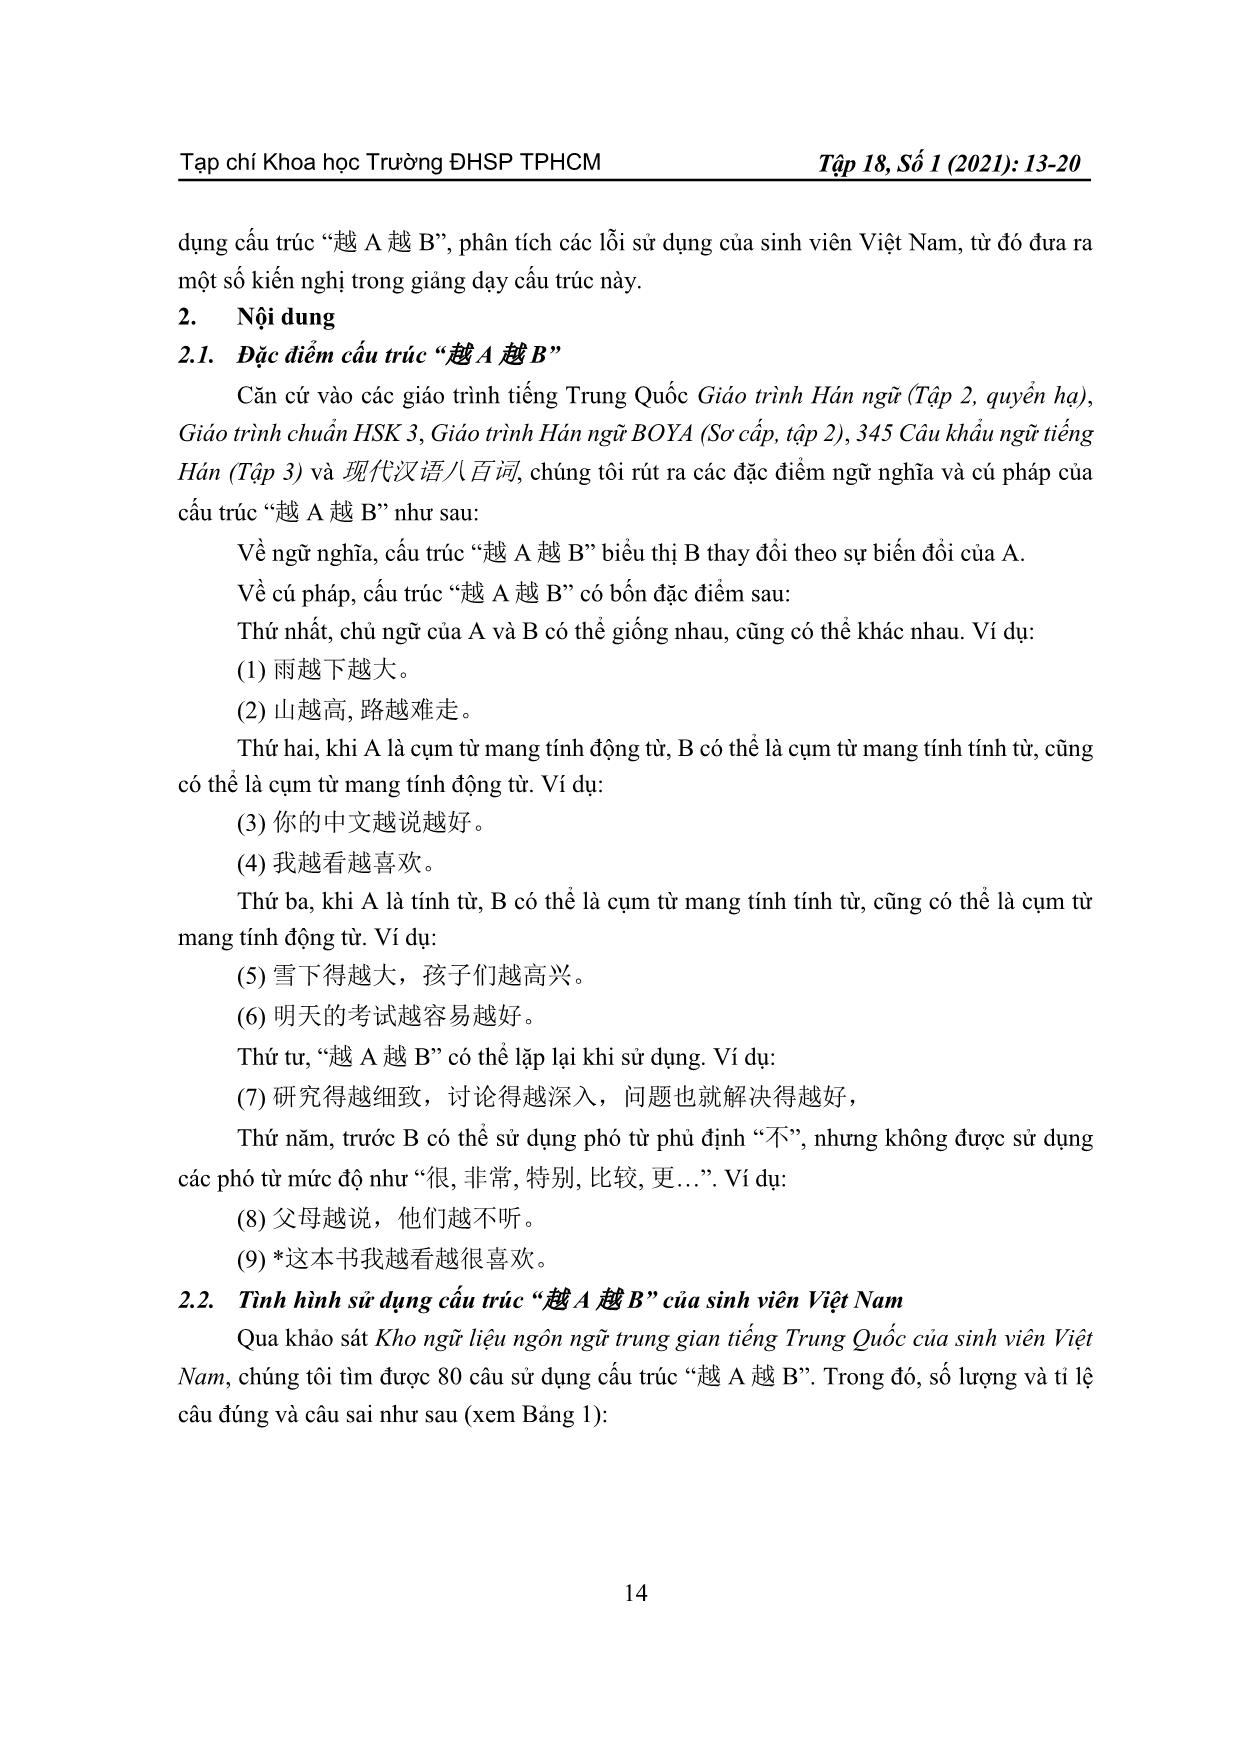 Phân tích lỗi sử dụng cấu trúc “yue A yue B” (越 A 越 B) của sinh viên Việt Nam trang 2